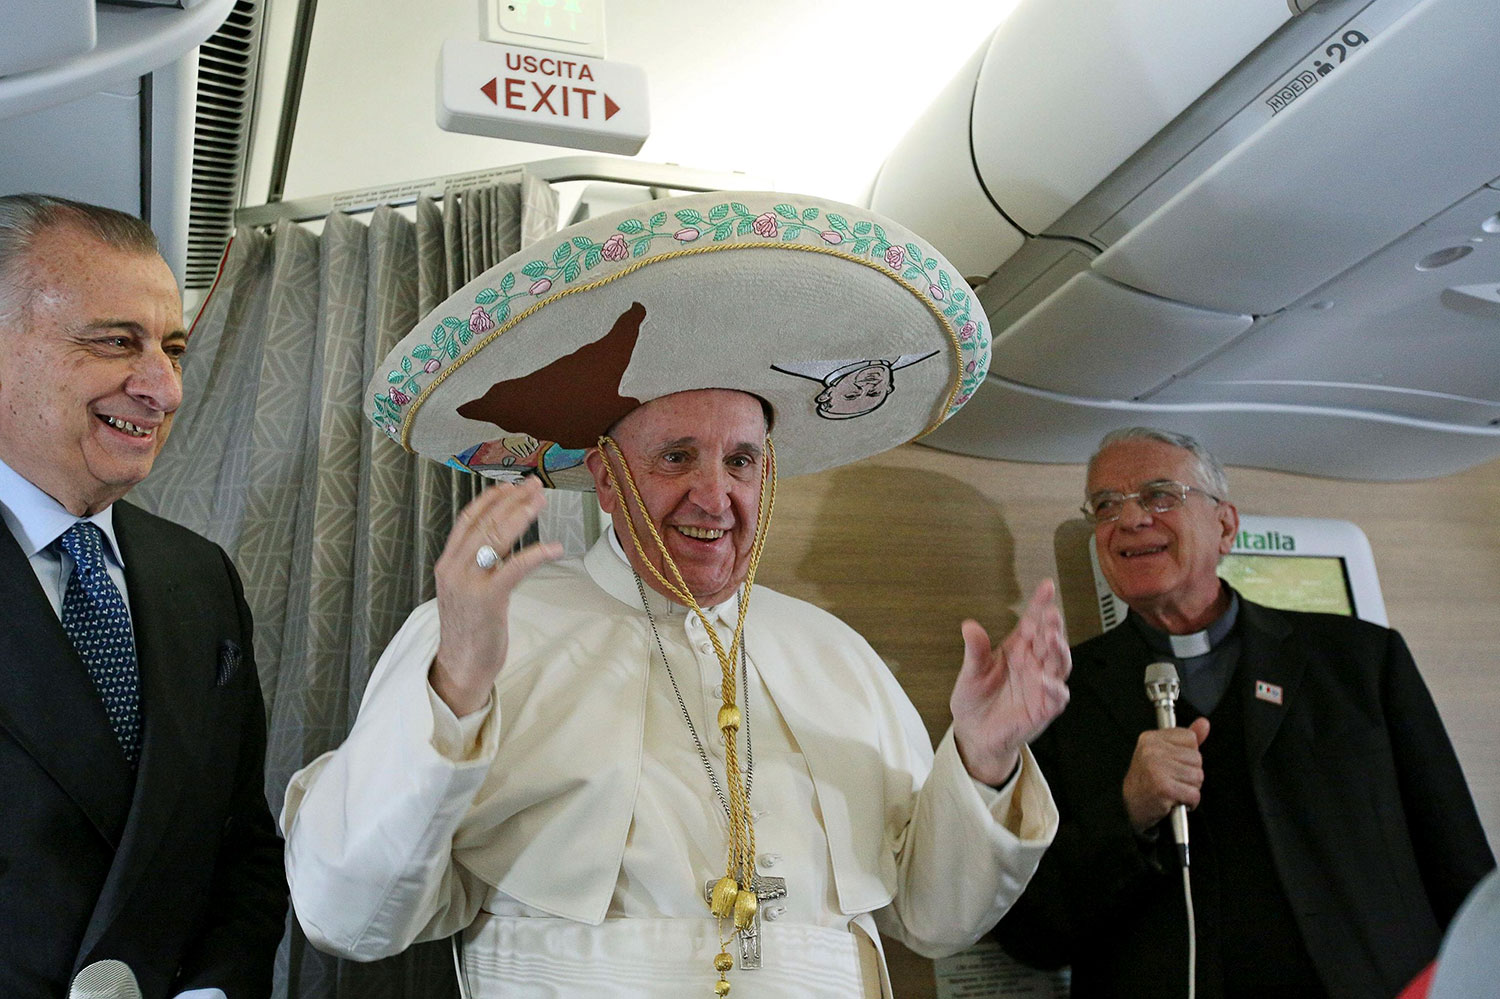 Cantinflas y un sombrero mexicano, buen humor para el Papa en el vuelo